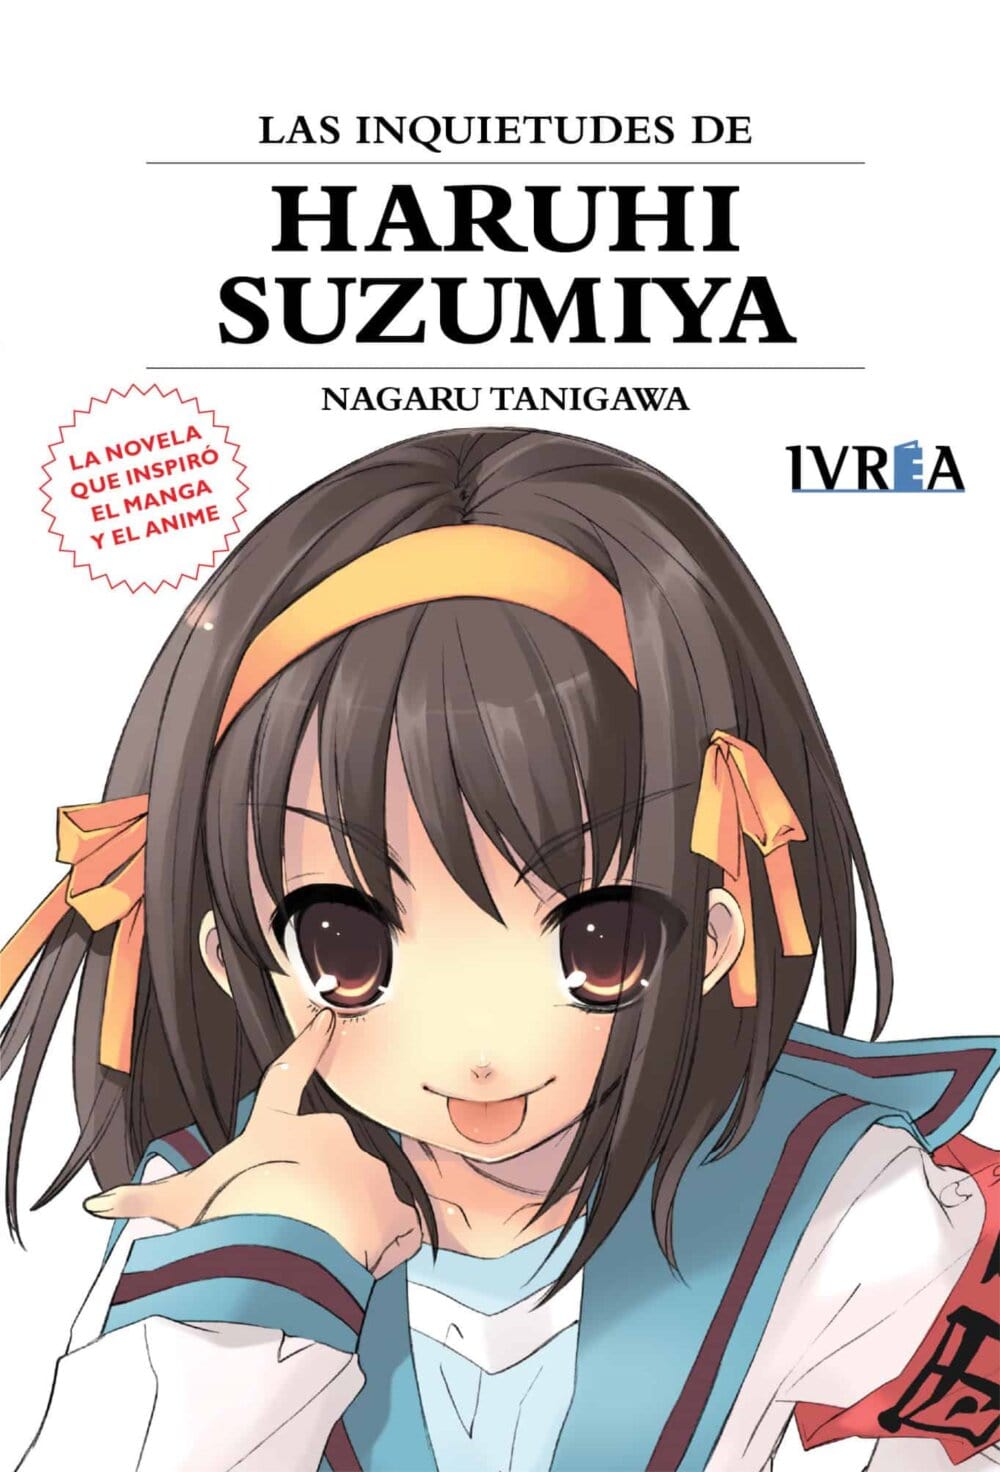 Portada de "Las inquietudes de Haruhi Suzumiya", sexto volumen de la famosísima saga de novelas ligeras que inspiró el anime y que publicó en español la editorial Ivrea.